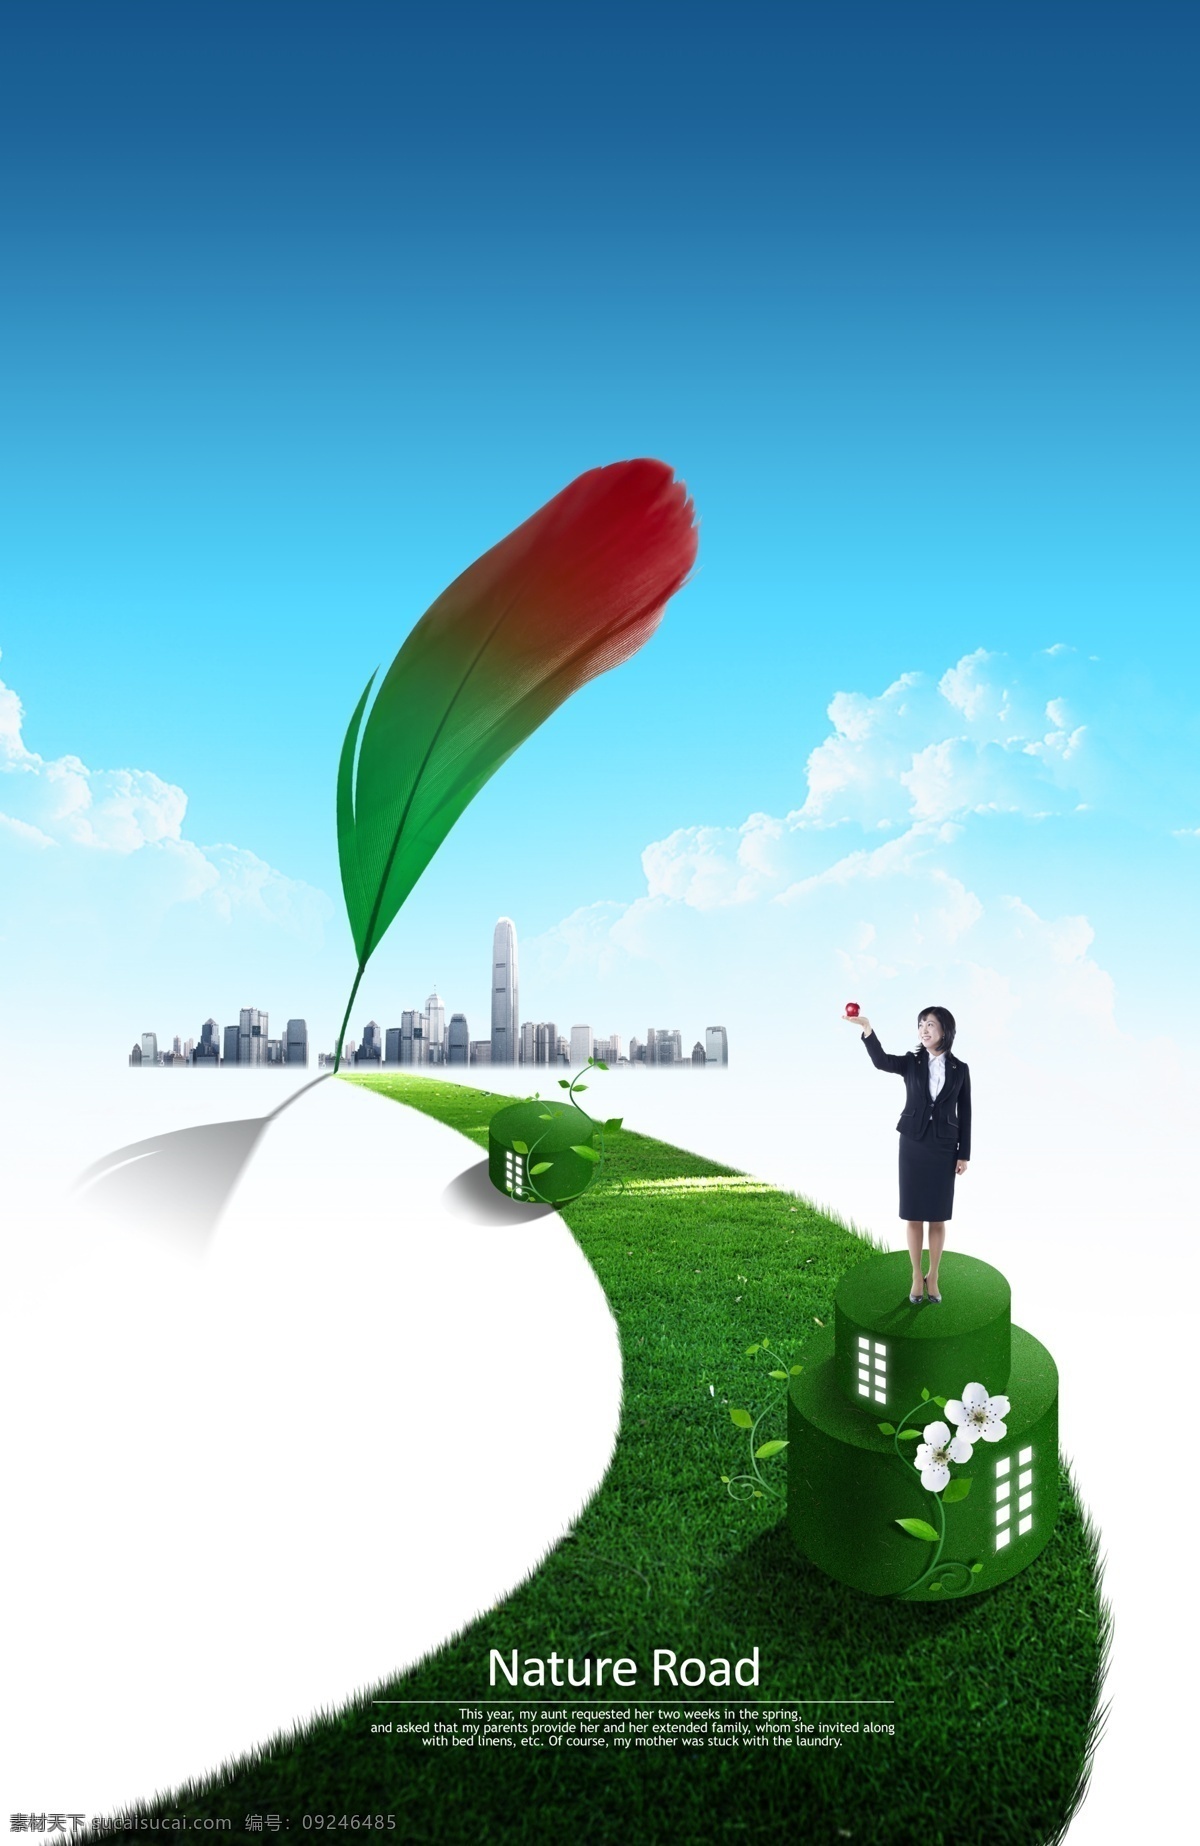 环保素材 环保概念海报 概念海报 环境保护 低碳生活 城市环境 绿色环保 创意 海报模板 节能 能源保护 草地 广告设计模板 psd素材 白色